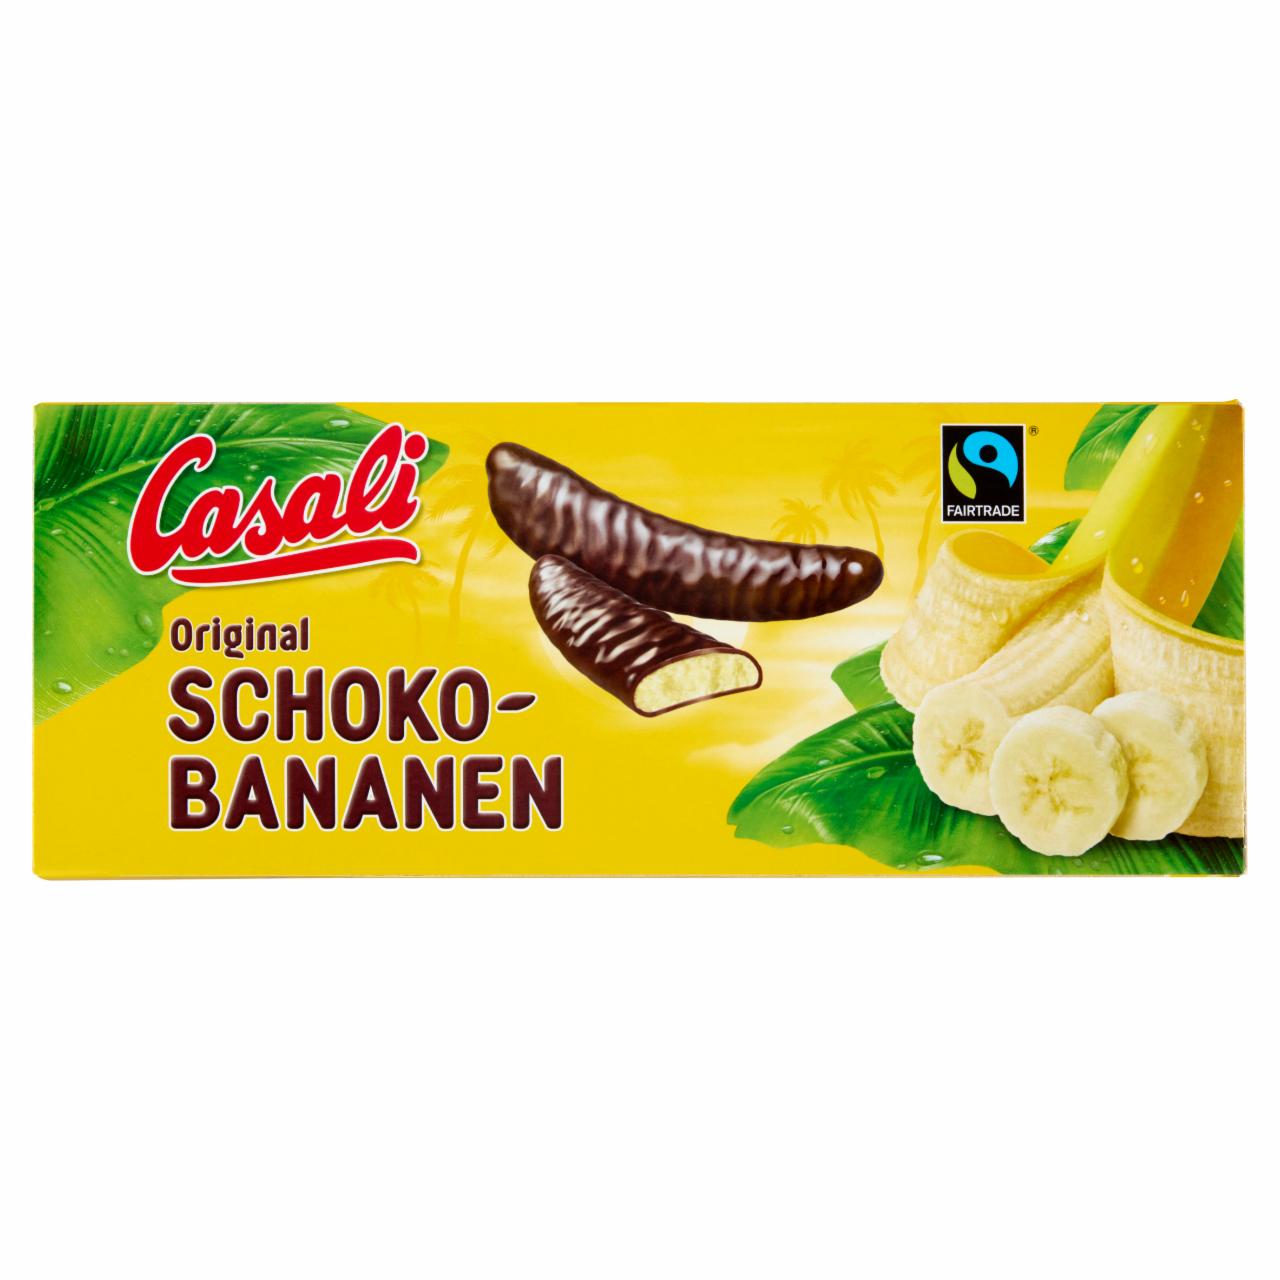 Képek - Casali Original csokoládéba mártott habosított banánkrém 600 g